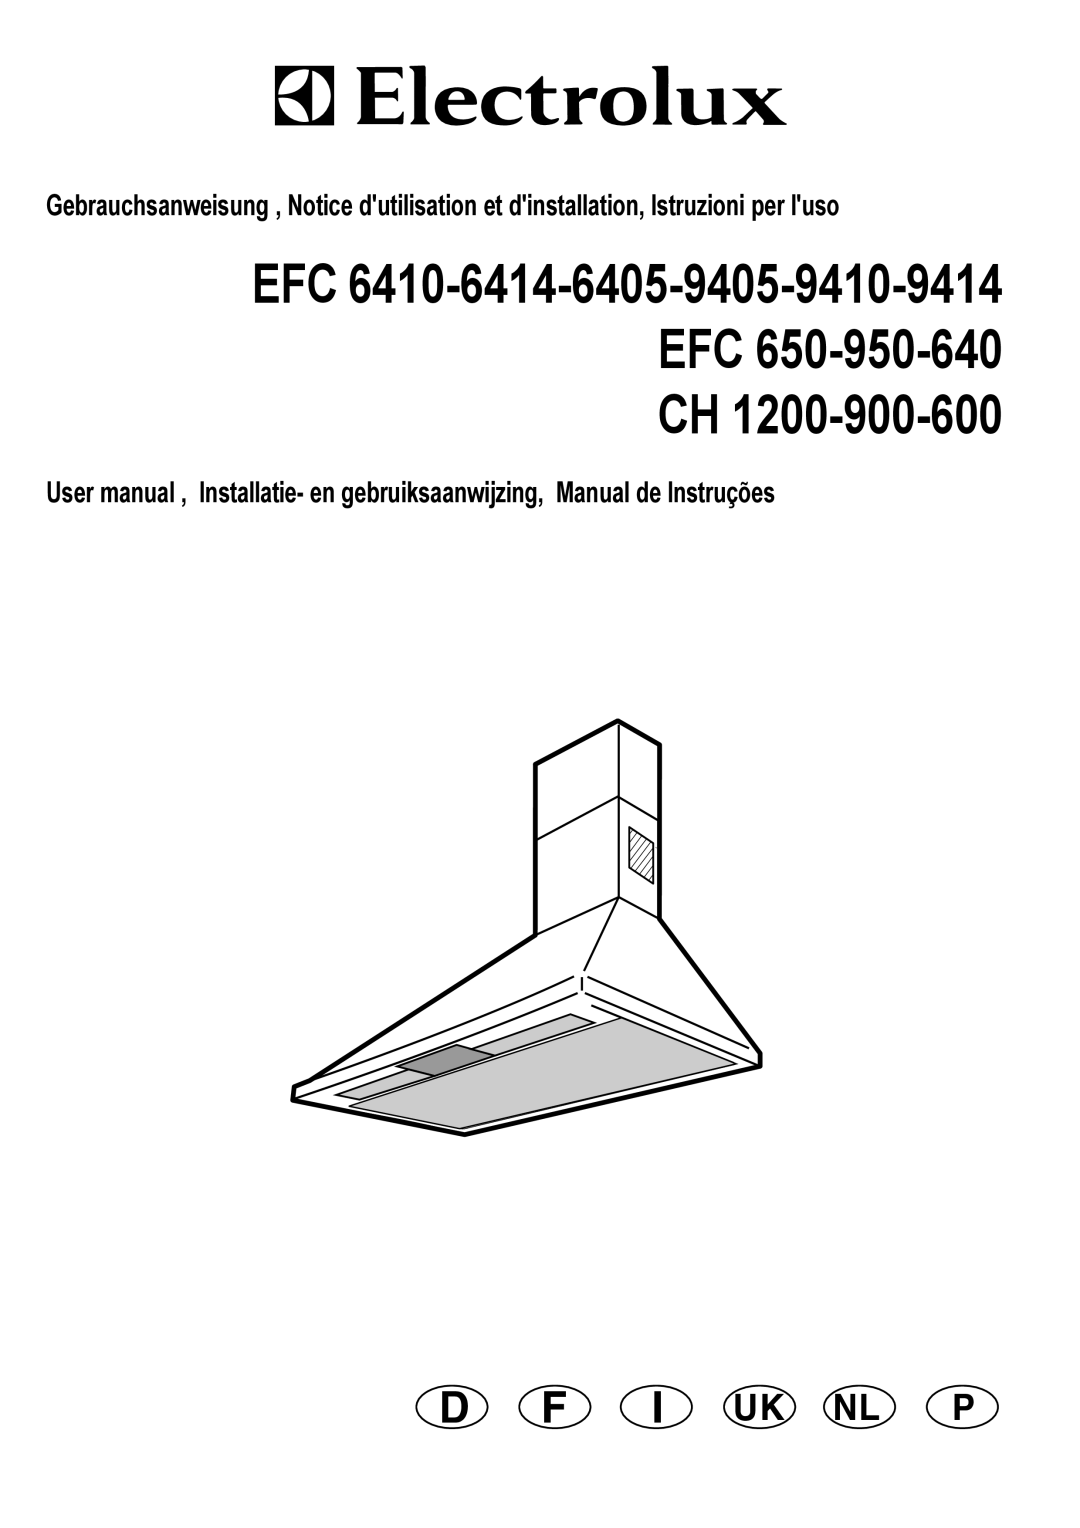 Electrolux CH 1200-900-600 user manual EFC 6410-6414-6405-9405-9410-9414 EFC 650-950-640 CH, D F I Uk Nl P 